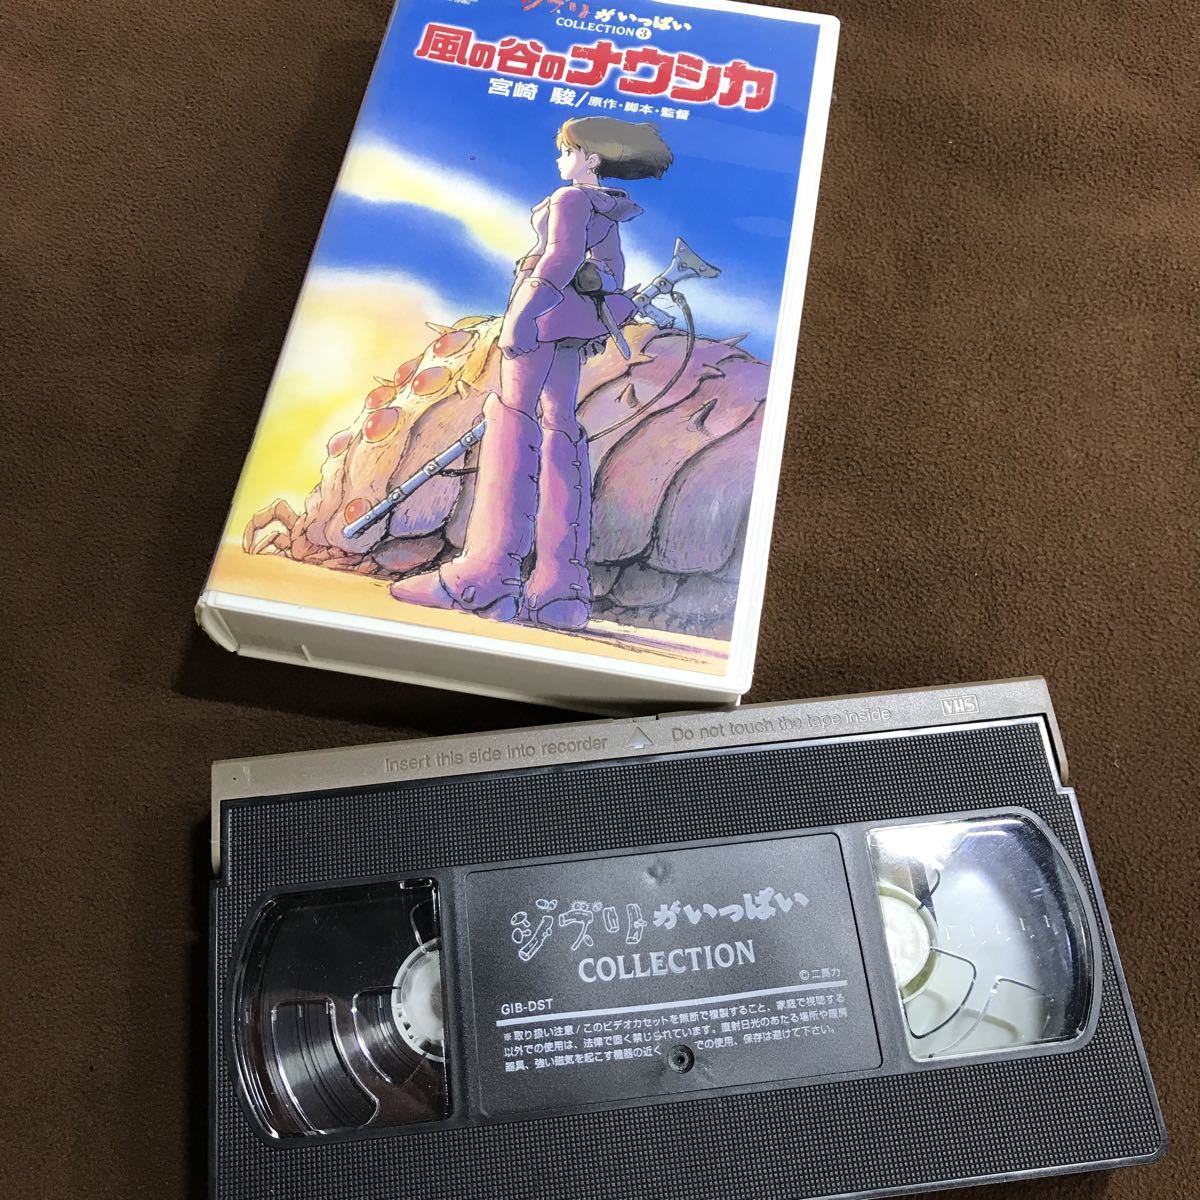 LM40201 ジブリがいっぱい VHS VIDEO ビデオテープ 風の谷ナウシカ 